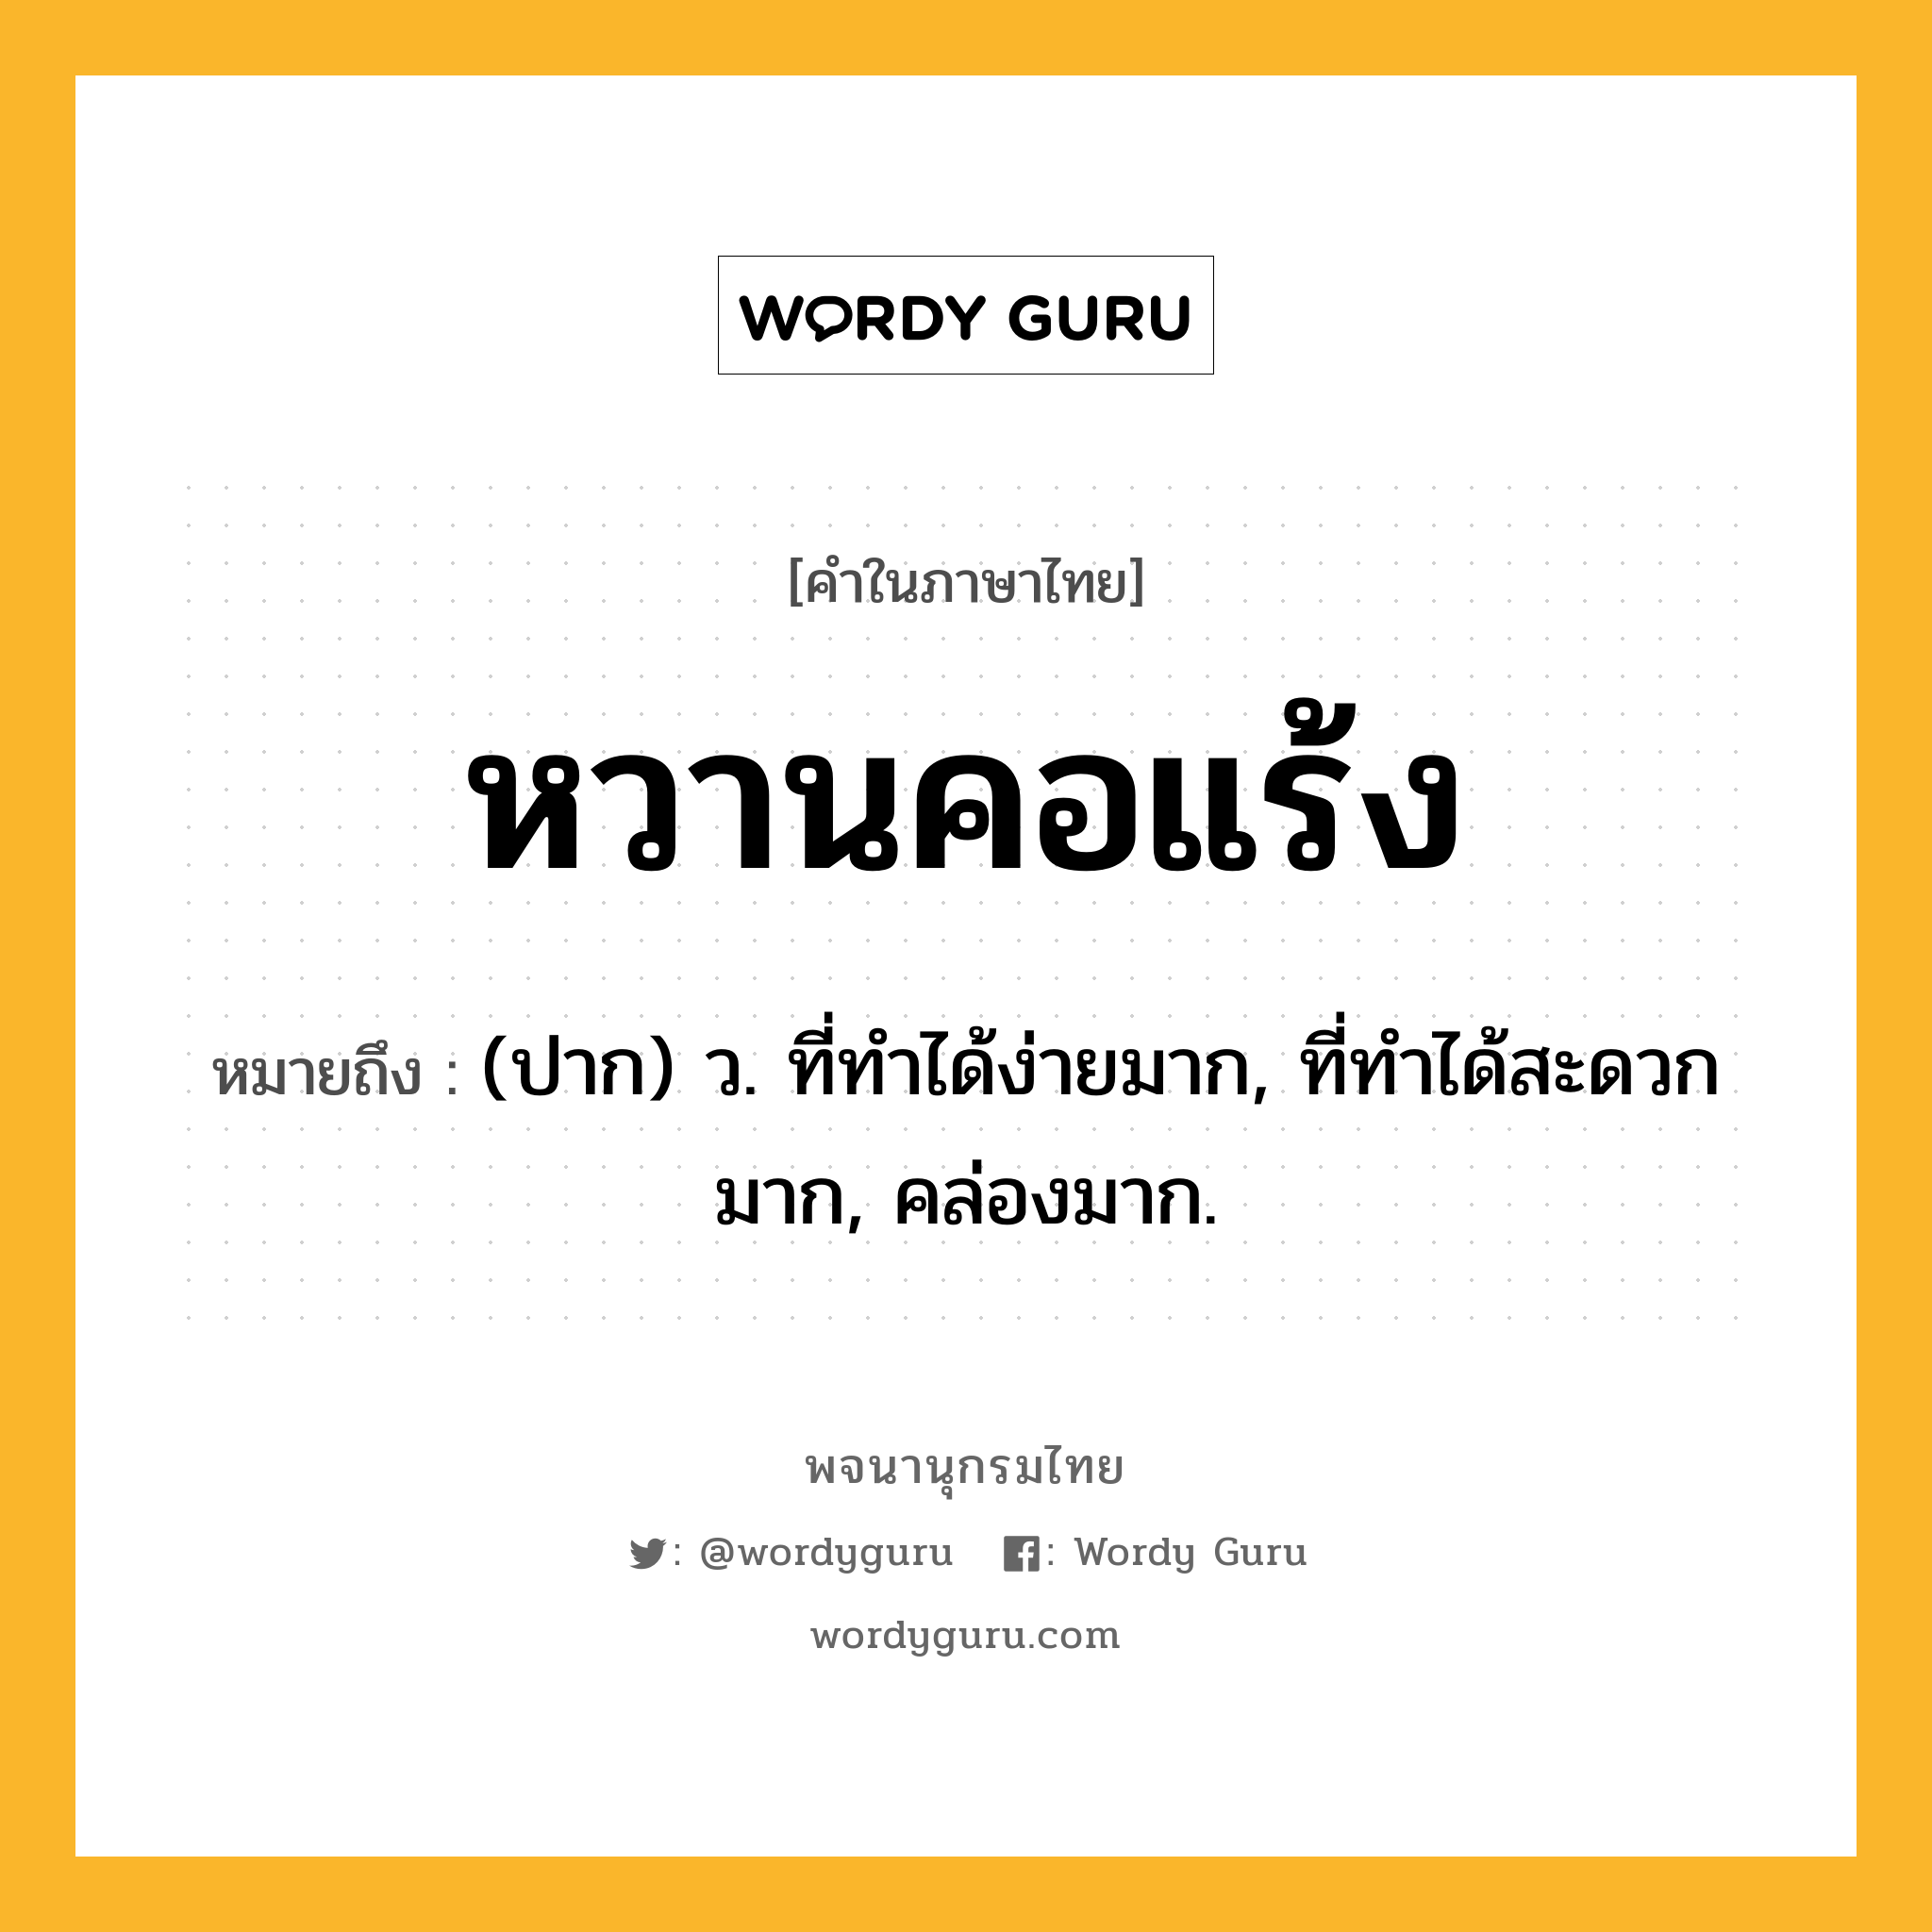 หวานคอแร้ง หมายถึงอะไร?, คำในภาษาไทย หวานคอแร้ง หมายถึง (ปาก) ว. ที่ทำได้ง่ายมาก, ที่ทำได้สะดวกมาก, คล่องมาก.